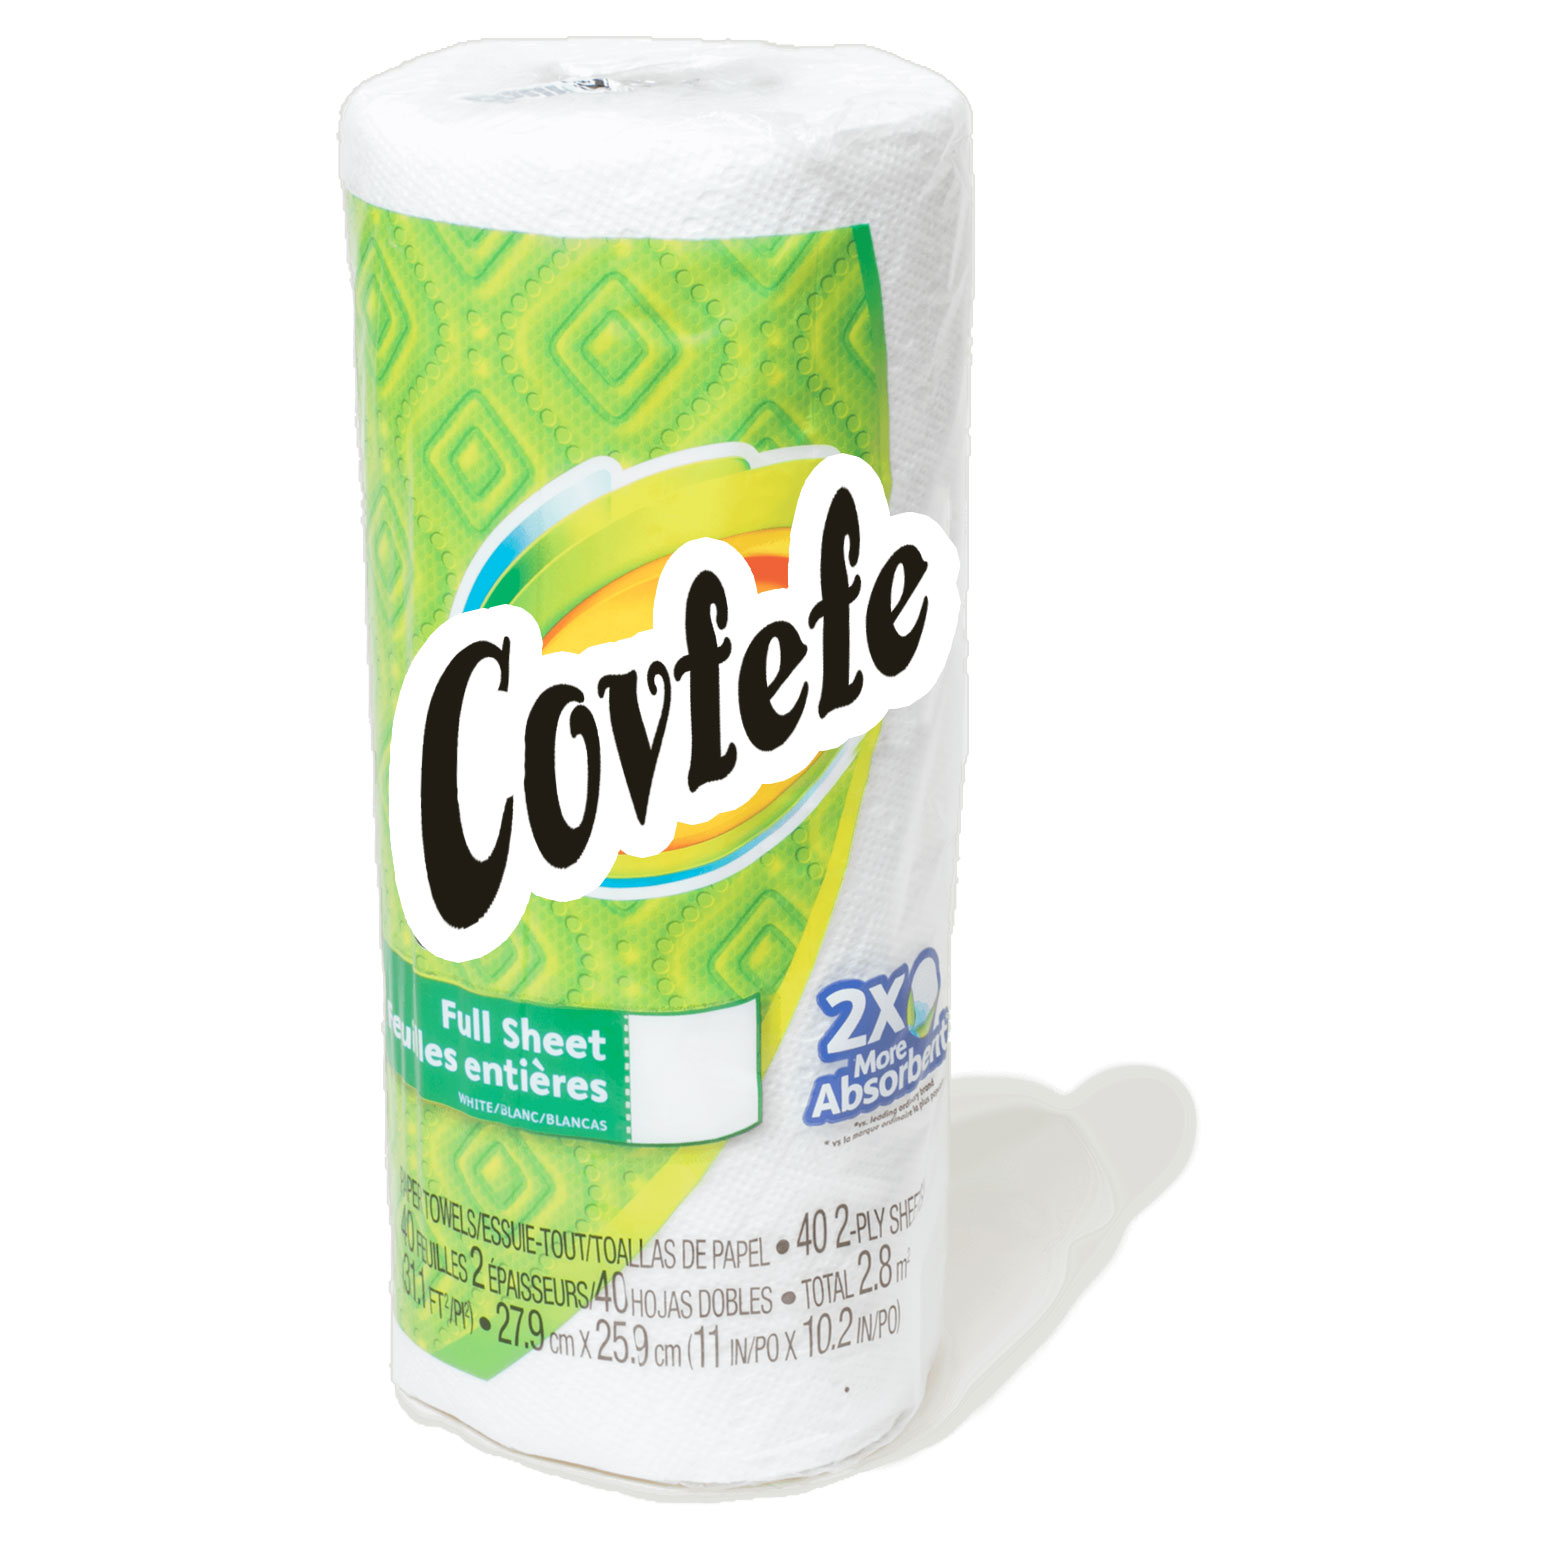 Covfefe paper towels